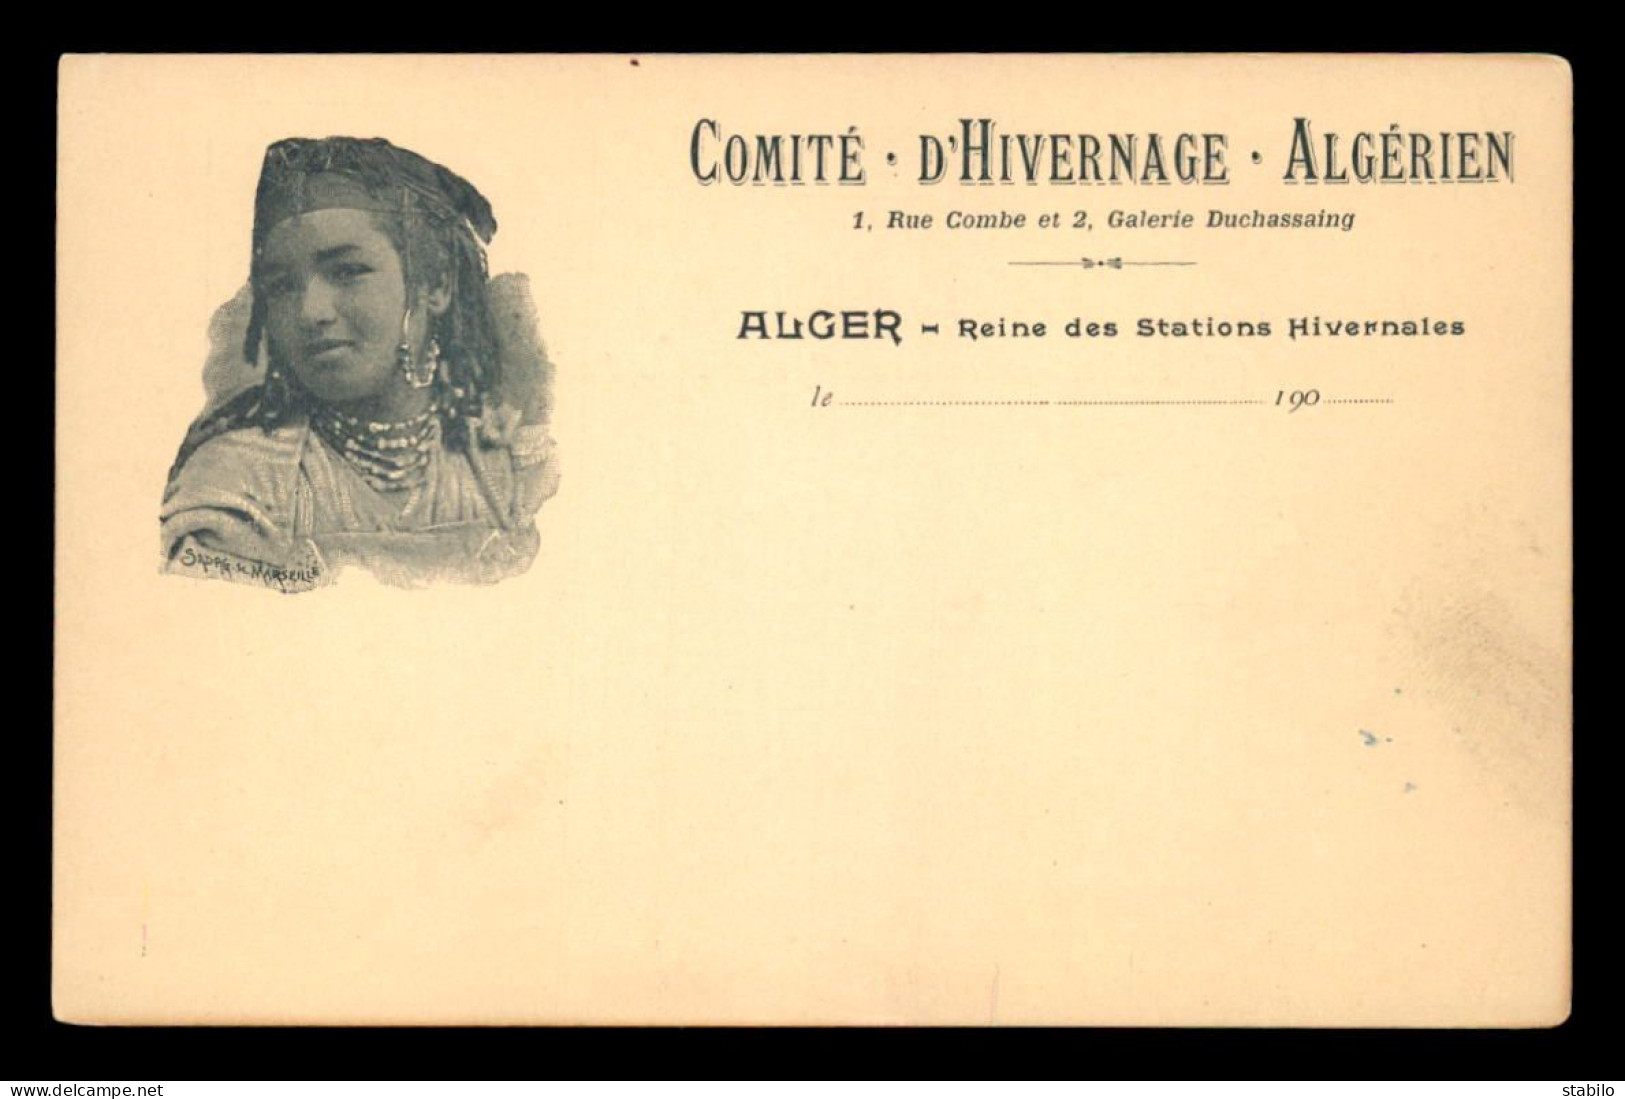 ALGERIE - ALGER - FEMME MAURESQUE - COMITE D'HIVERNAGE ALGERIEN, 1 RUE COMBE ET 2 GALERIE DUCHASSAING - Algiers